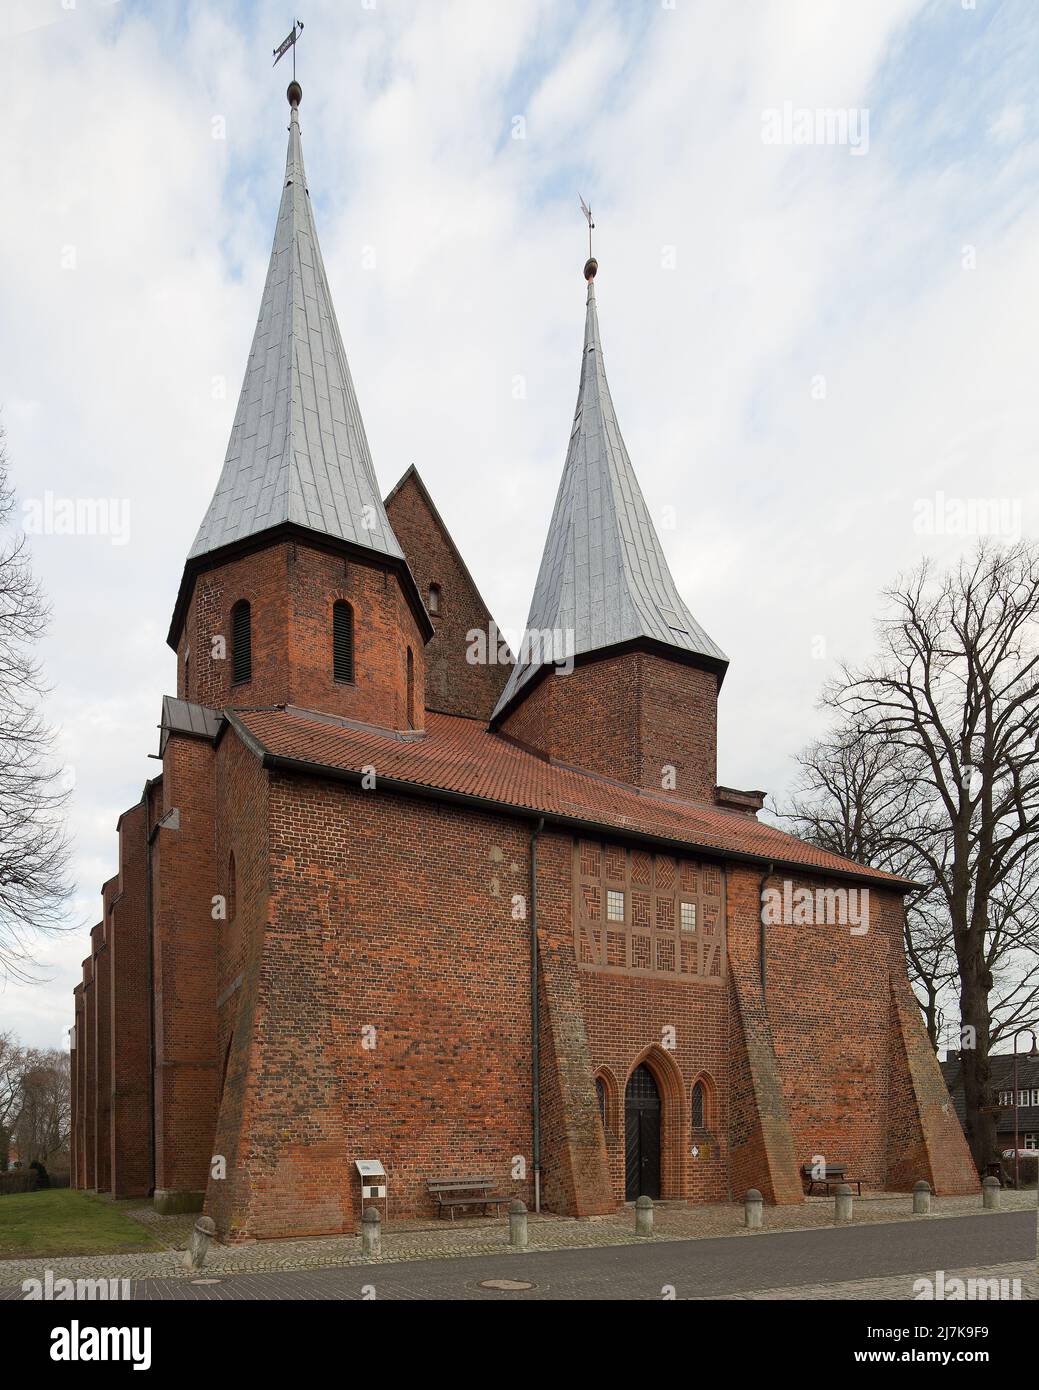 Bardowick bei Lüneburg ehem Stiftskirche auch DOM genannt 93487 Westbau mit Zweiturmanlage und Zwischenhalle Ansicht von Westen Foto de stock